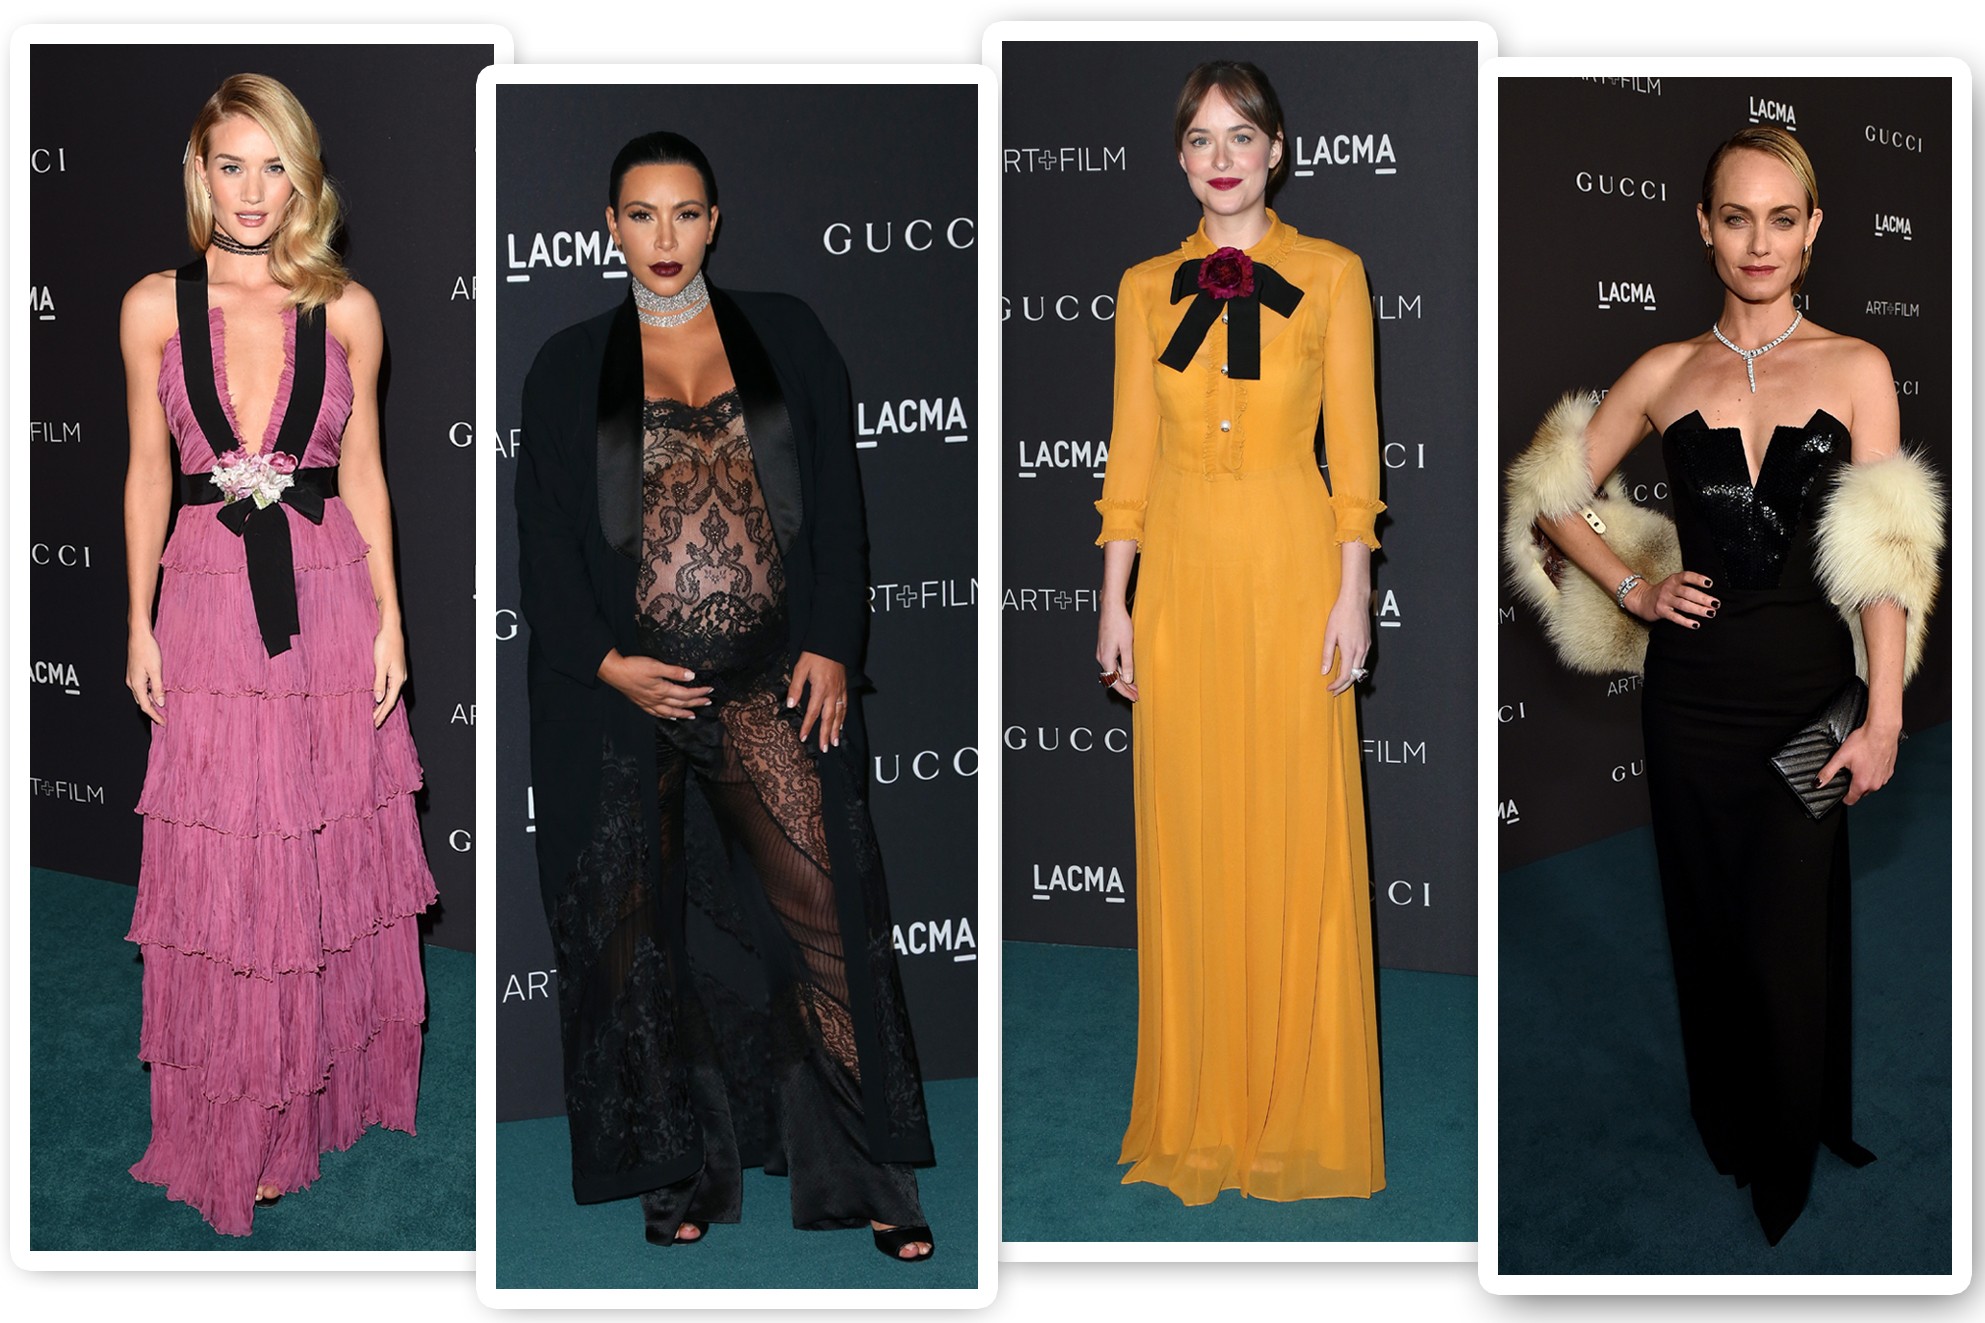 Os melhores looks do LACMA Film + Art Gala Vogue red carpet